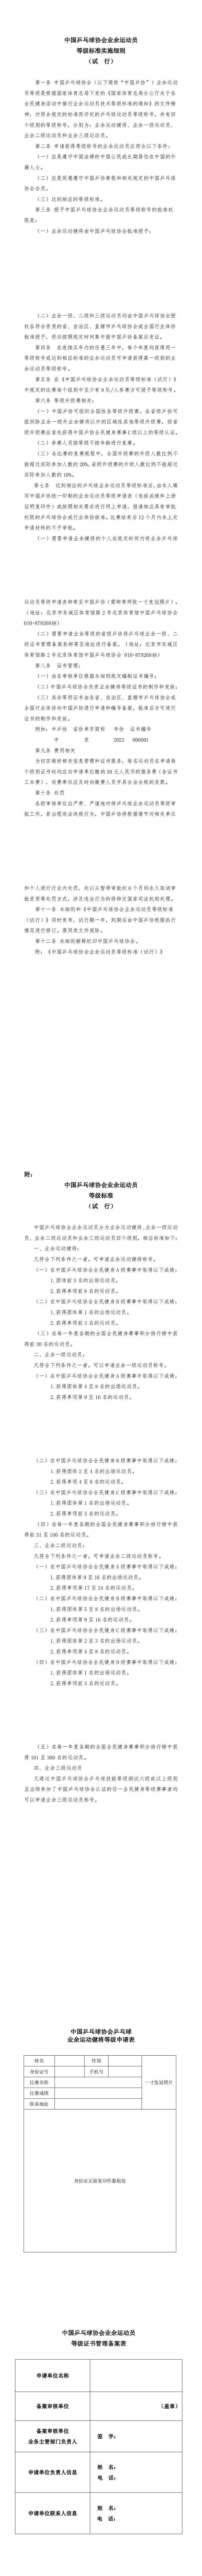 中国乒乓球协会业余运动员等级标准实施细则_00.jpg